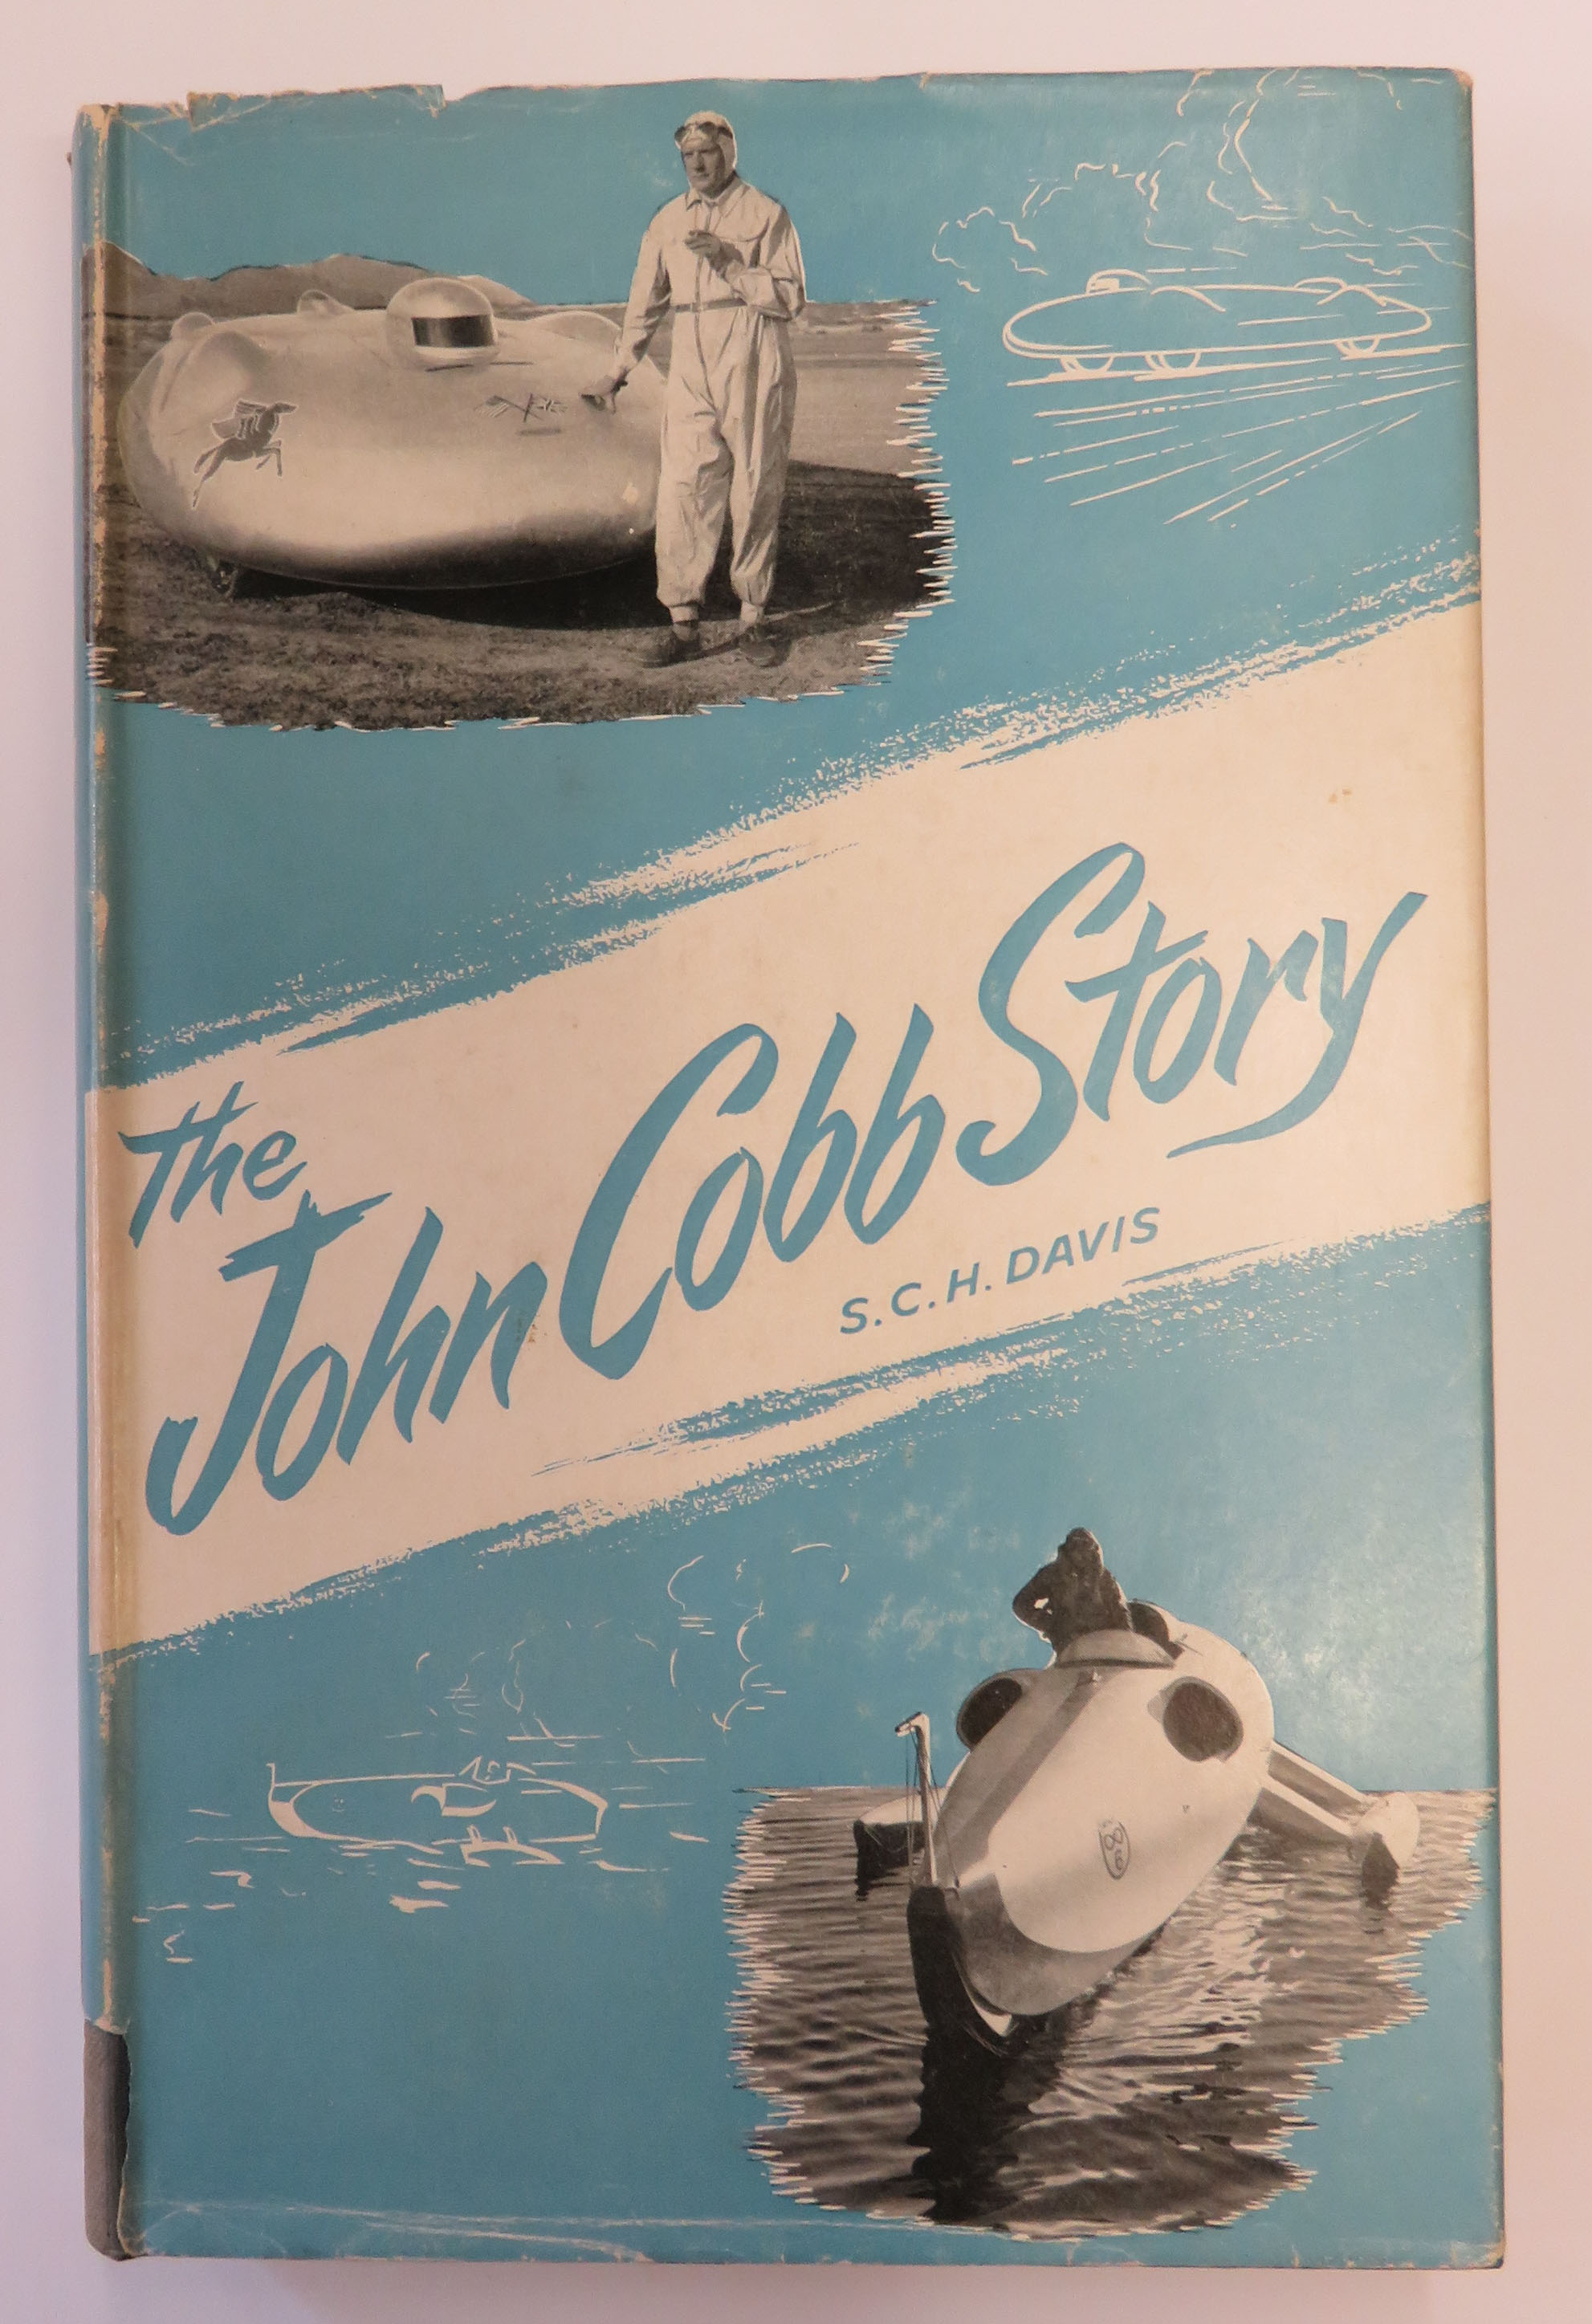 The John Cobb Story